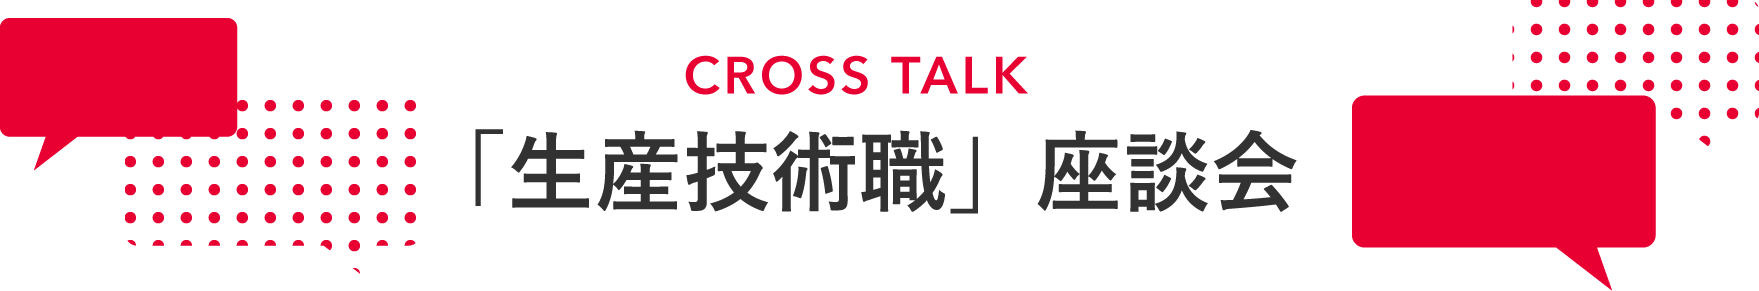 CROSS TALK 「生産技術職」座談会